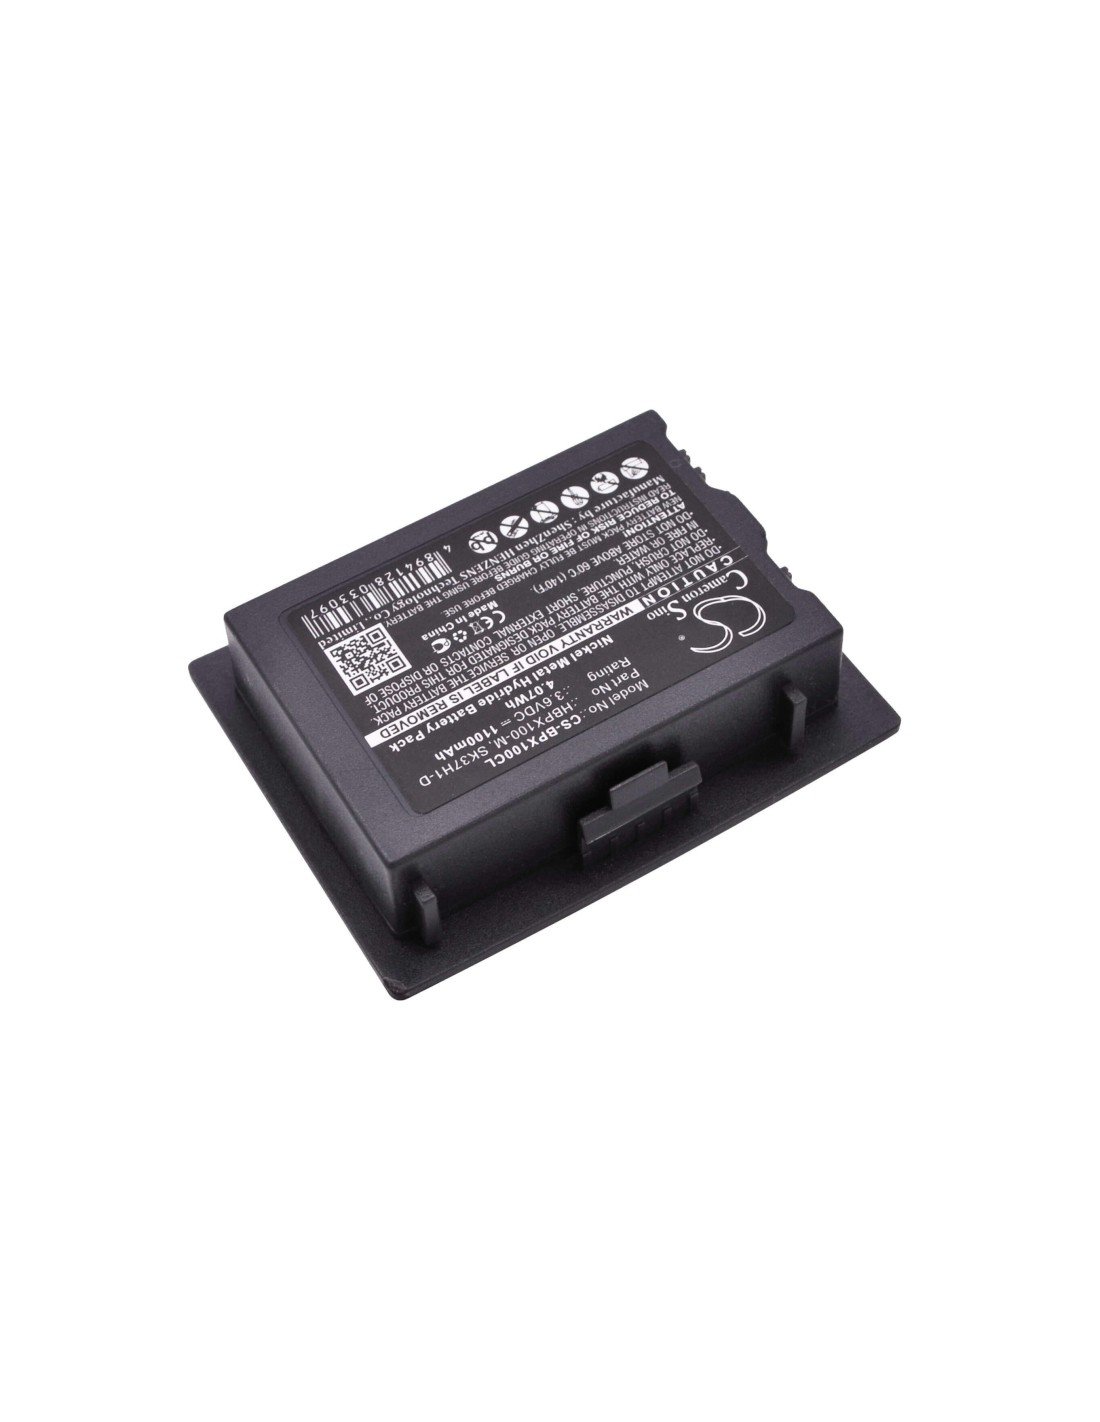 Battery for Netlink, I640 3.6V, 1100mAh - 3.96Wh